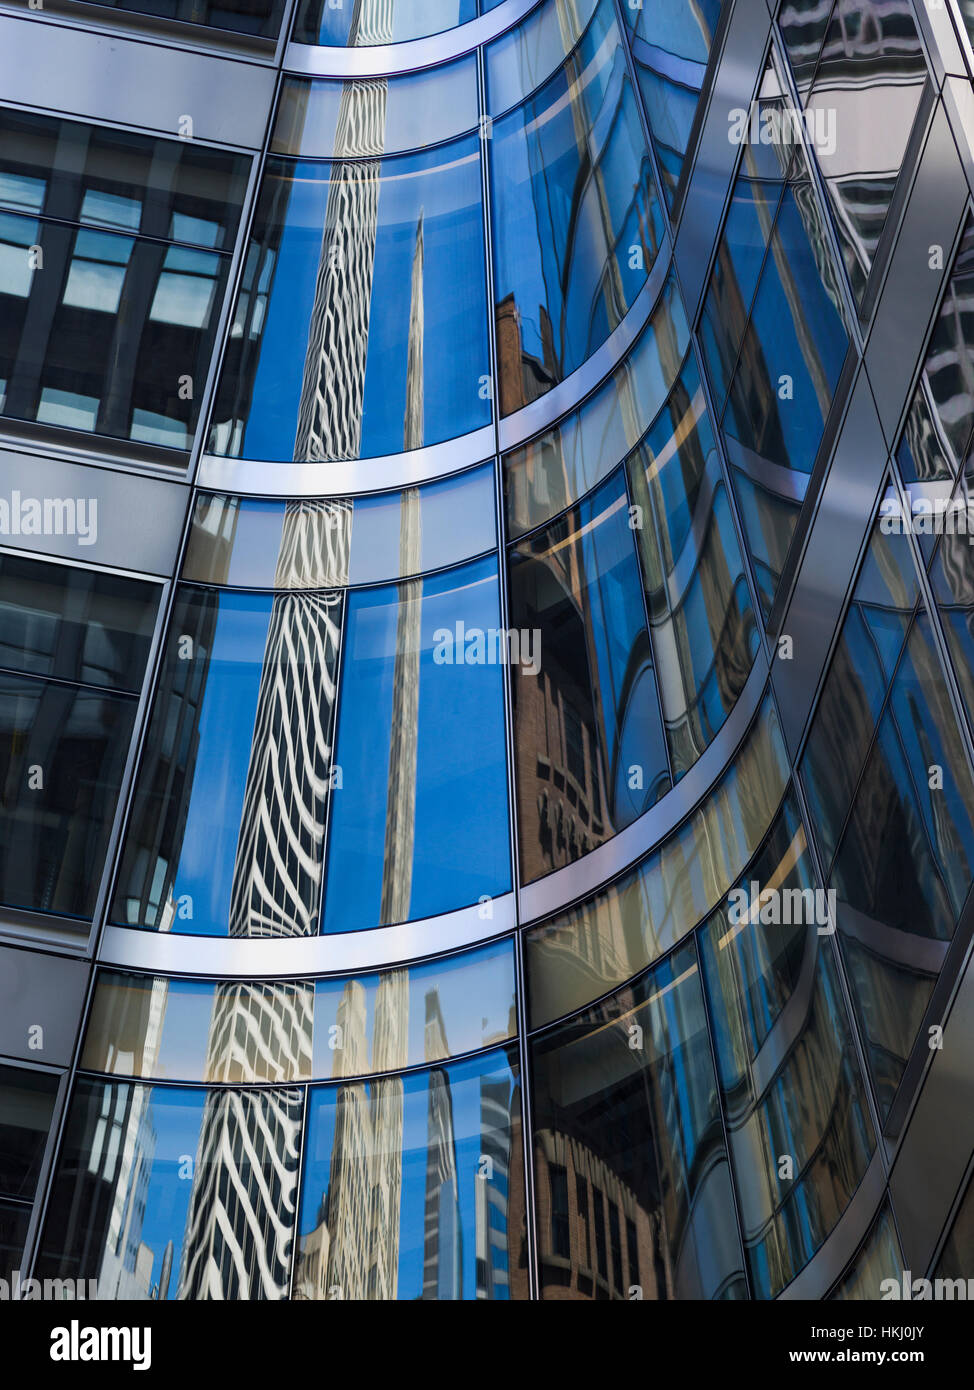 Le verre incurvé façade d'un bâtiment en raison de gratte-ciel ; New York City, New York, États-Unis d'Amérique Banque D'Images